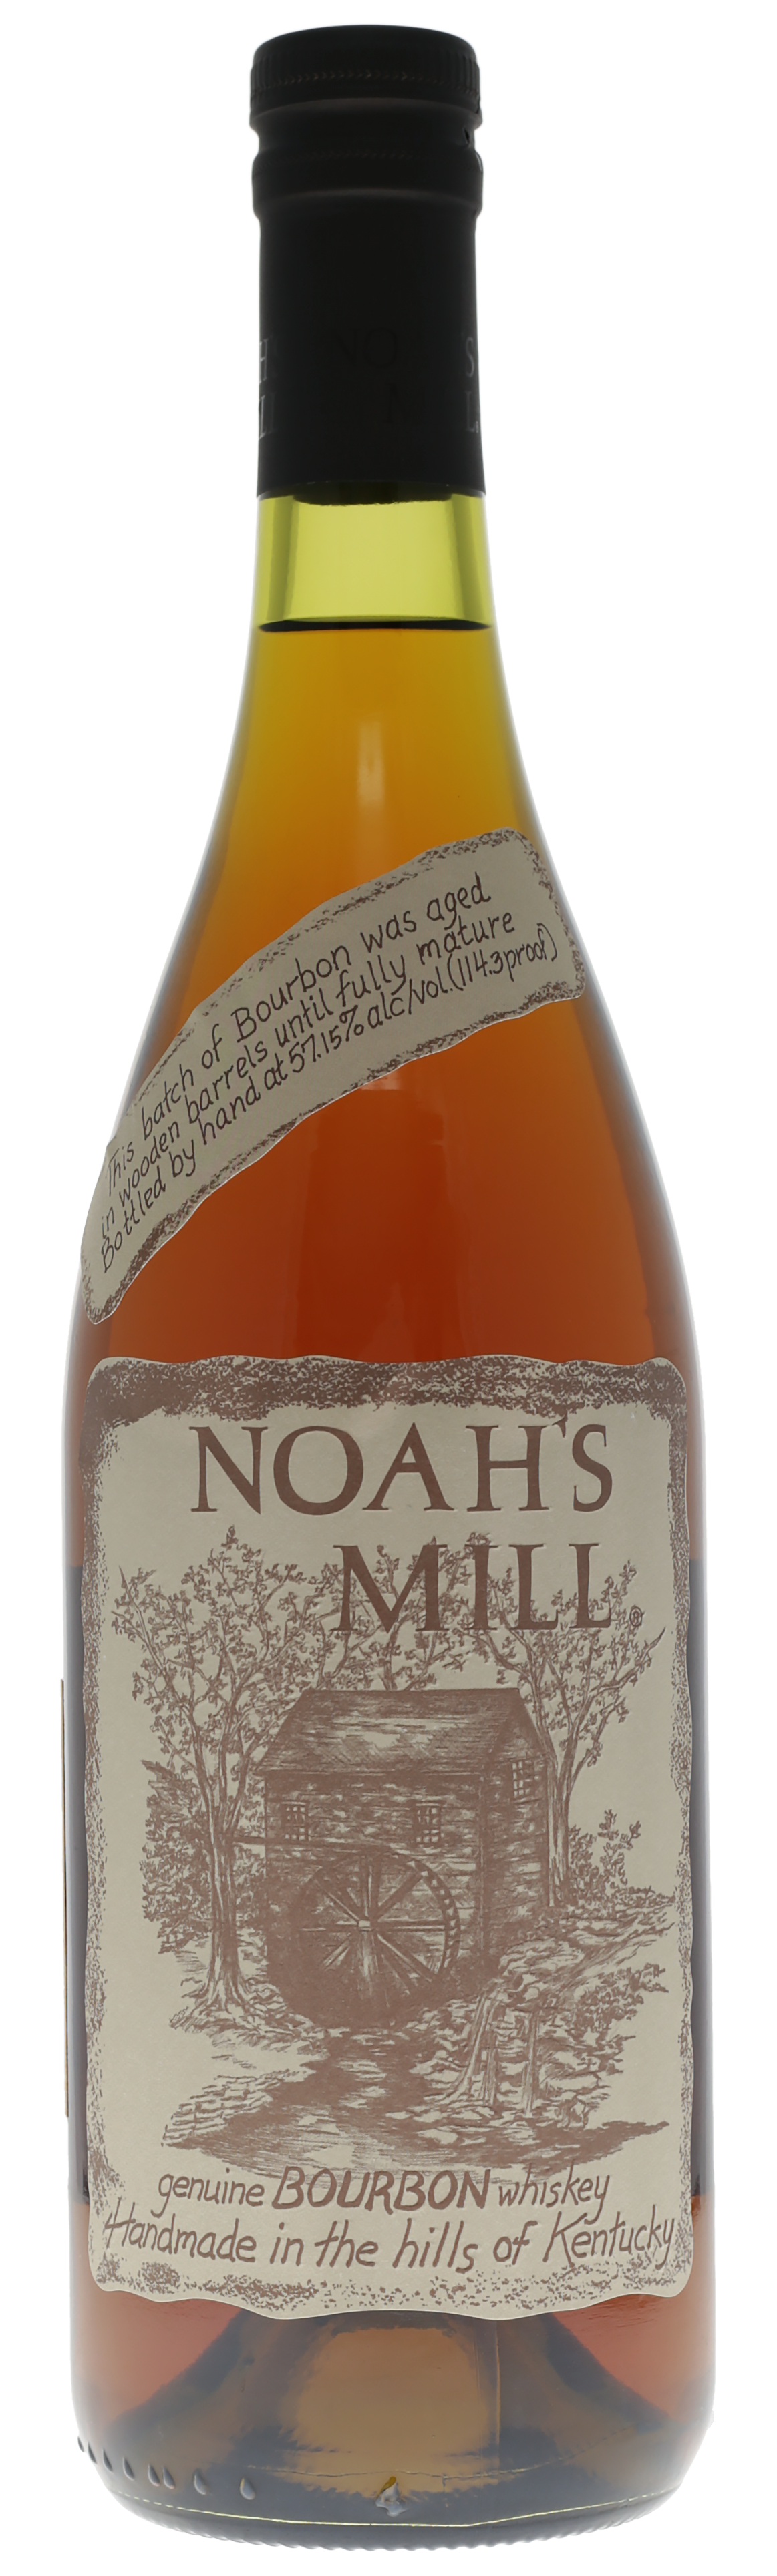 Willett Noah’s Mill Small Batch Kentucky Bourbon Whiskey